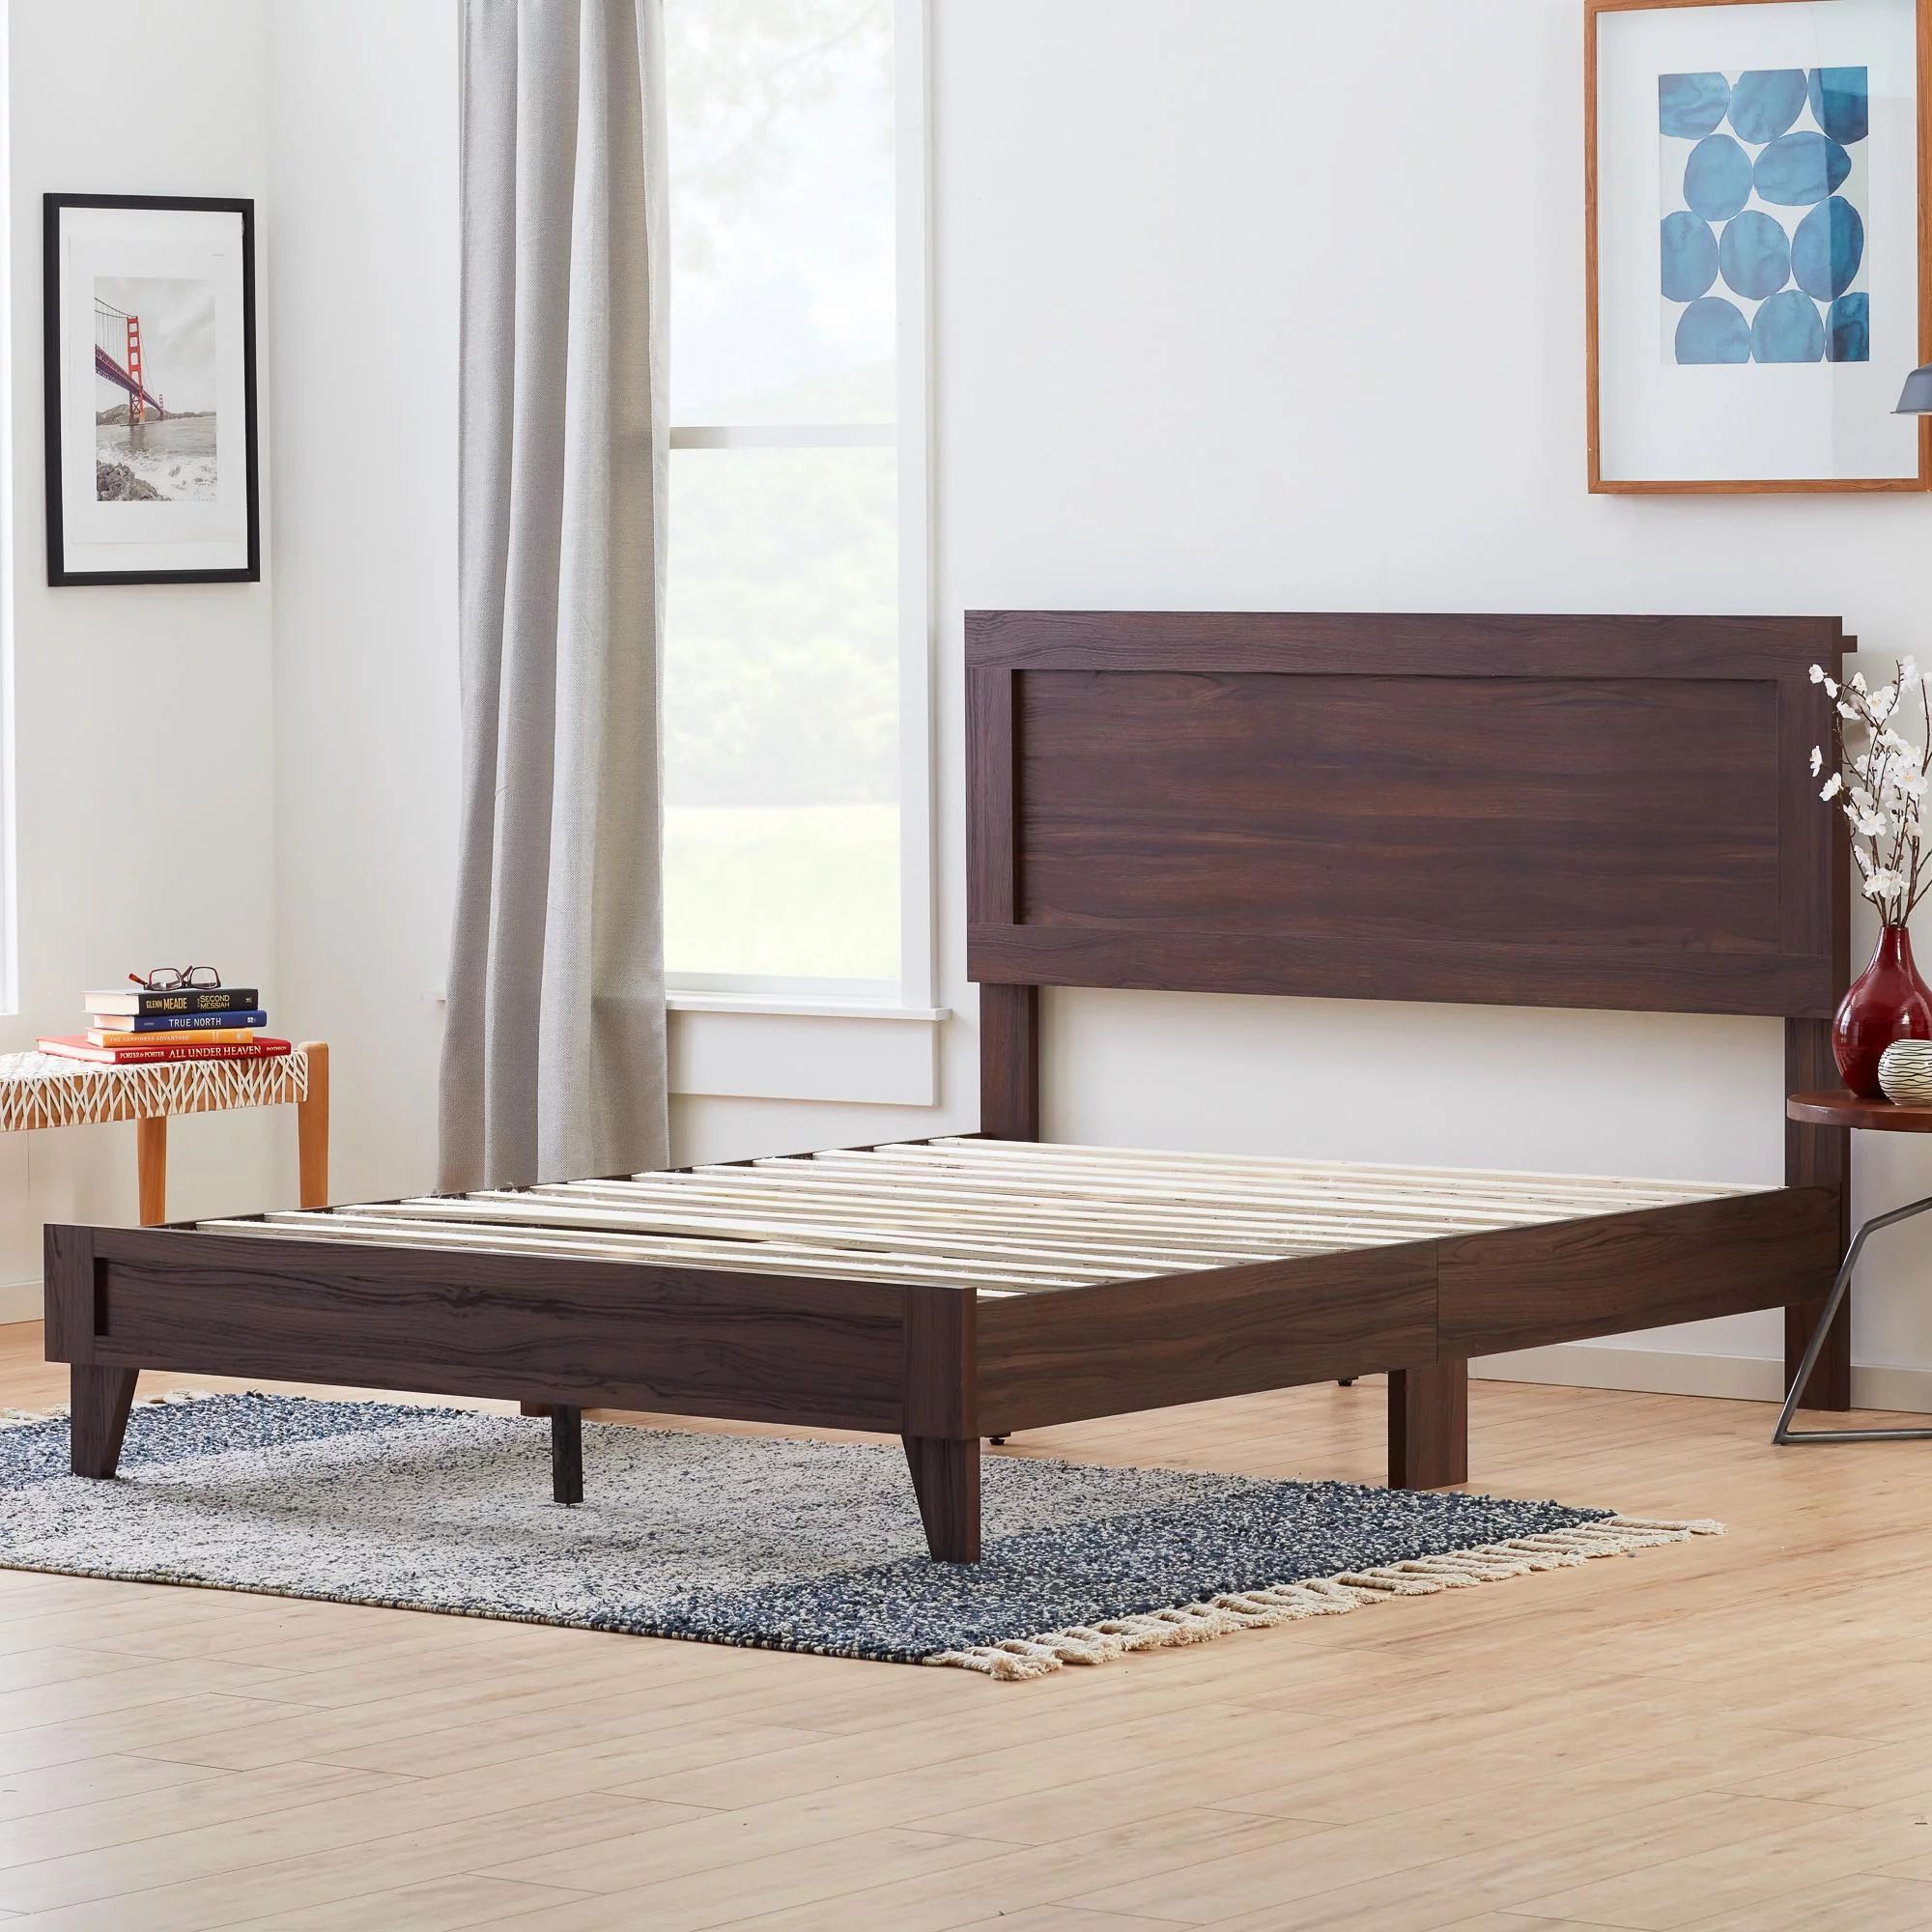 Rest Haven Durable Classic Framed Wood Platform Bed, Queen, Rustic Mahogany | Walmart (US)